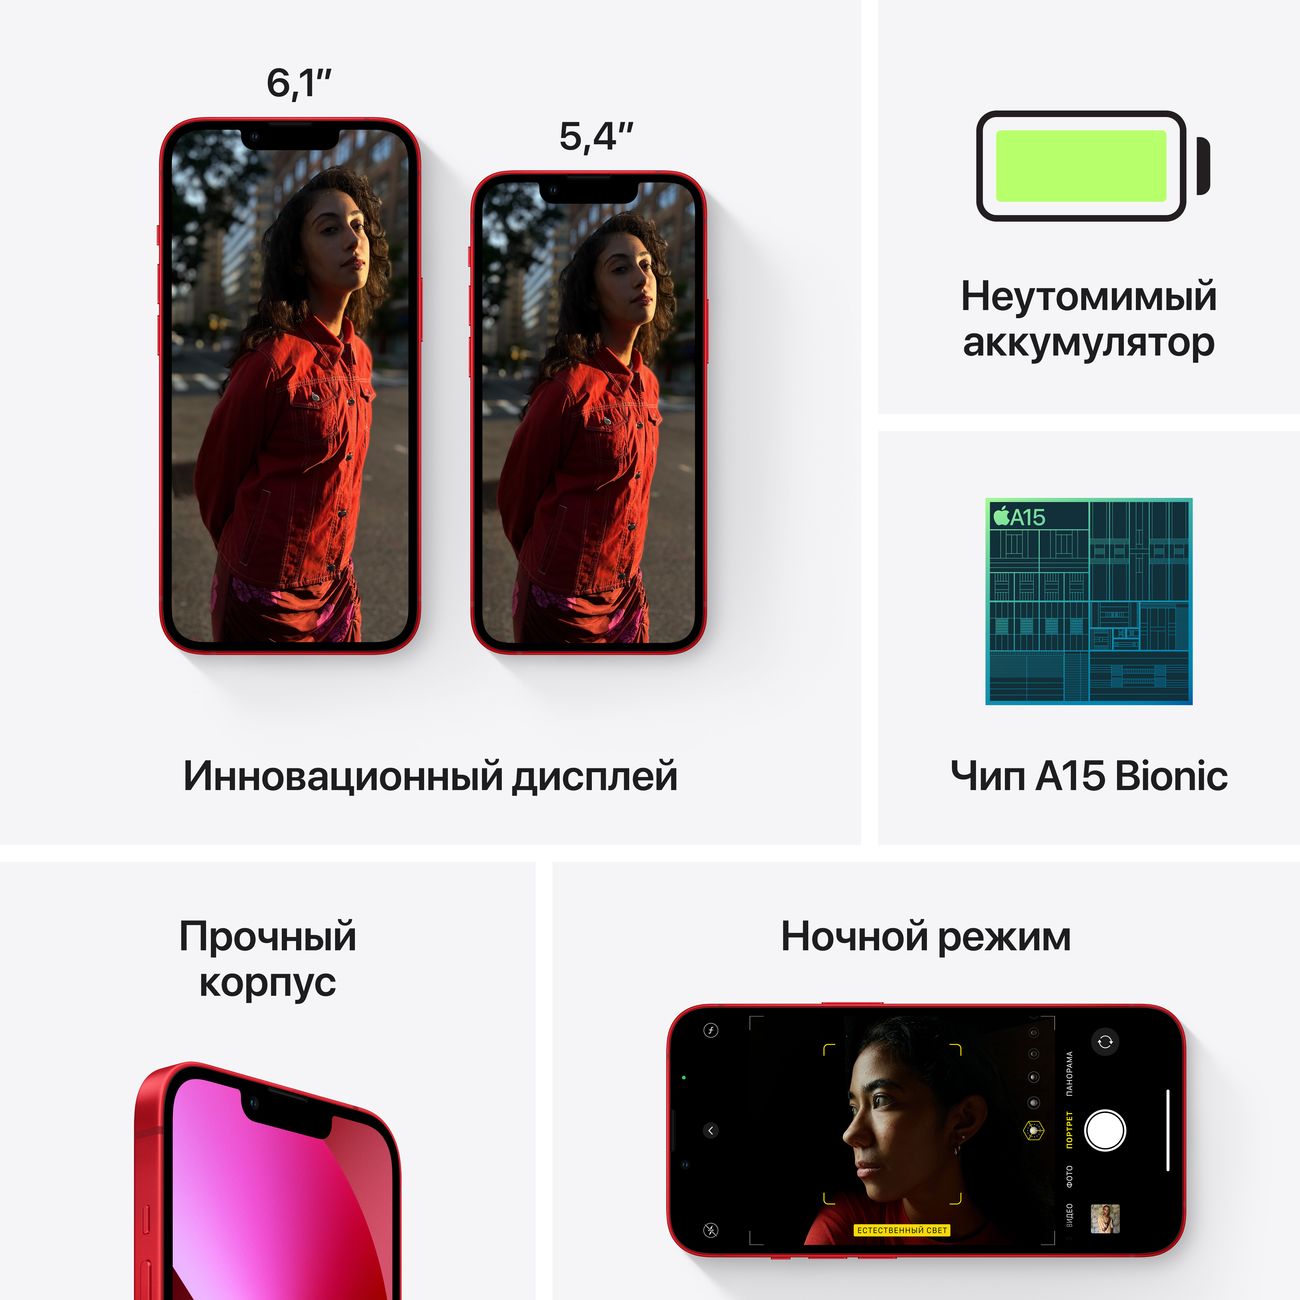 Купить смартфон apple iphone 13 mini 128gb (product) red Apple iPhone 13 mini в официальном магазине Apple, Samsung, Xiaomi. iPixel.ru Купить, заказ, кредит, рассрочка, отзывы,  характеристики, цена,  фотографии, в подарок.